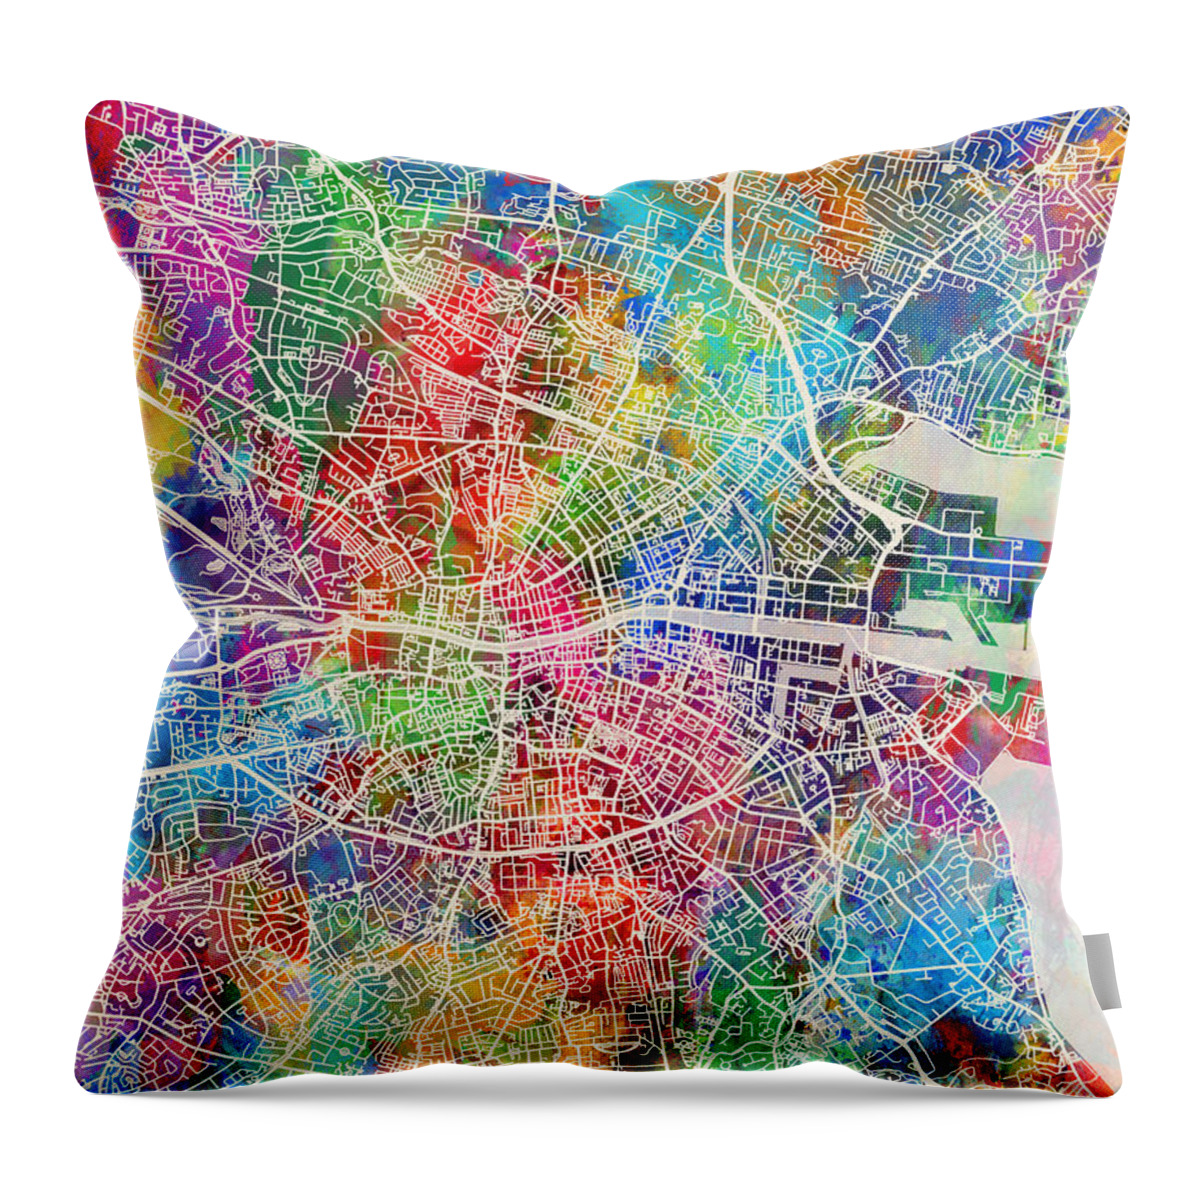 Dublin Throw Pillow featuring the digital art Dublin Ireland City Map by Michael Tompsett